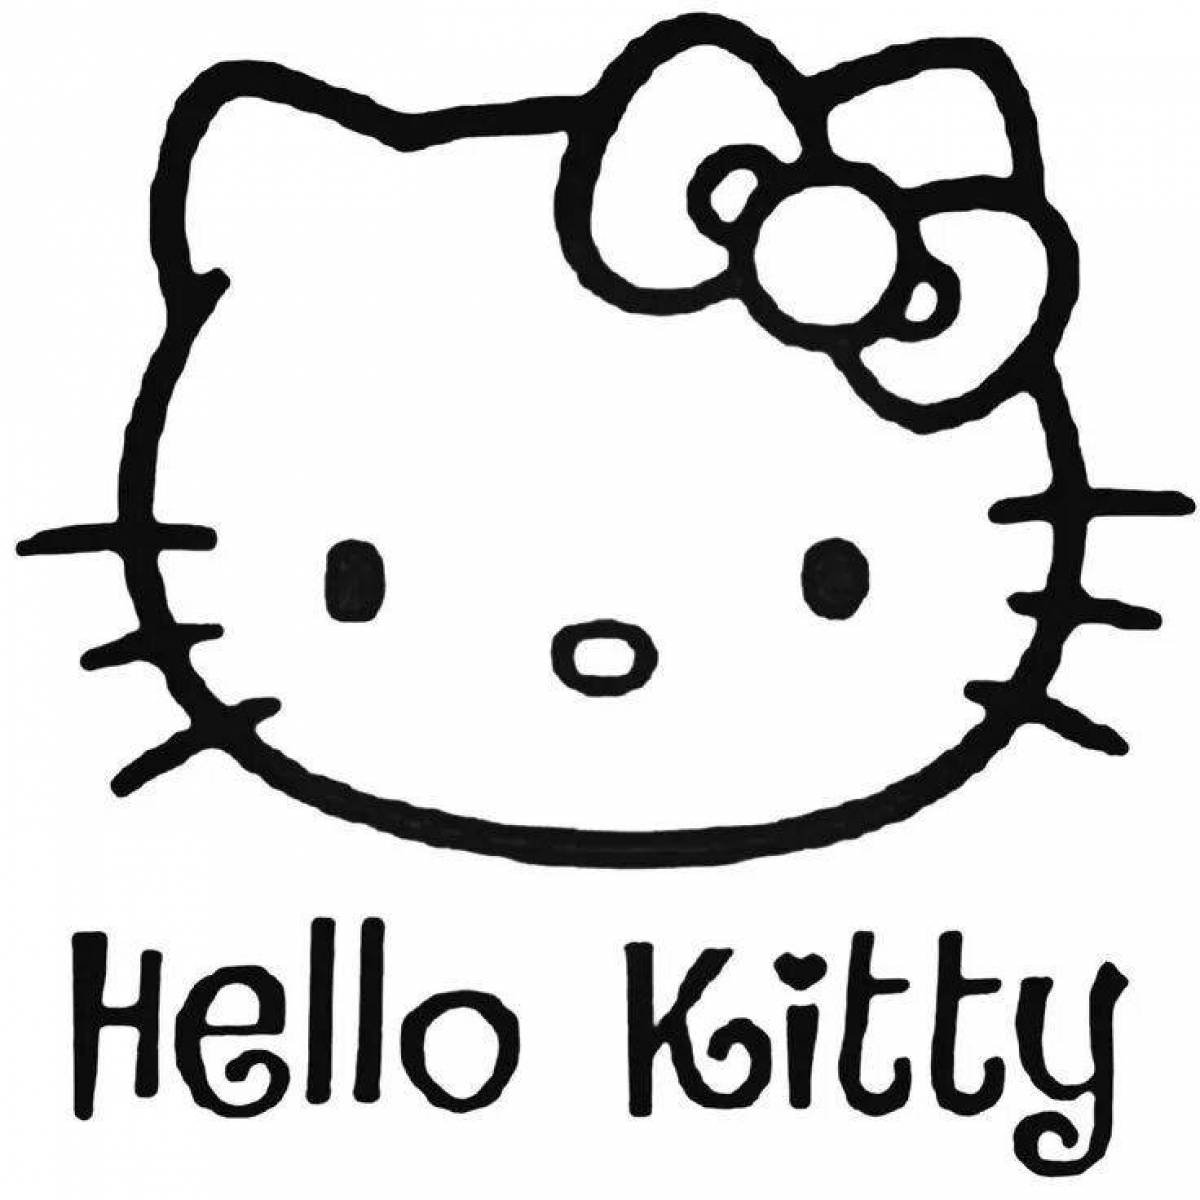 Как выглядит хеллоу. [Tllj rbnb. Хеллоу Китти. Хеллоу Китти hello Kitty hello Kitty. Hello Kitty Хелло Китти.